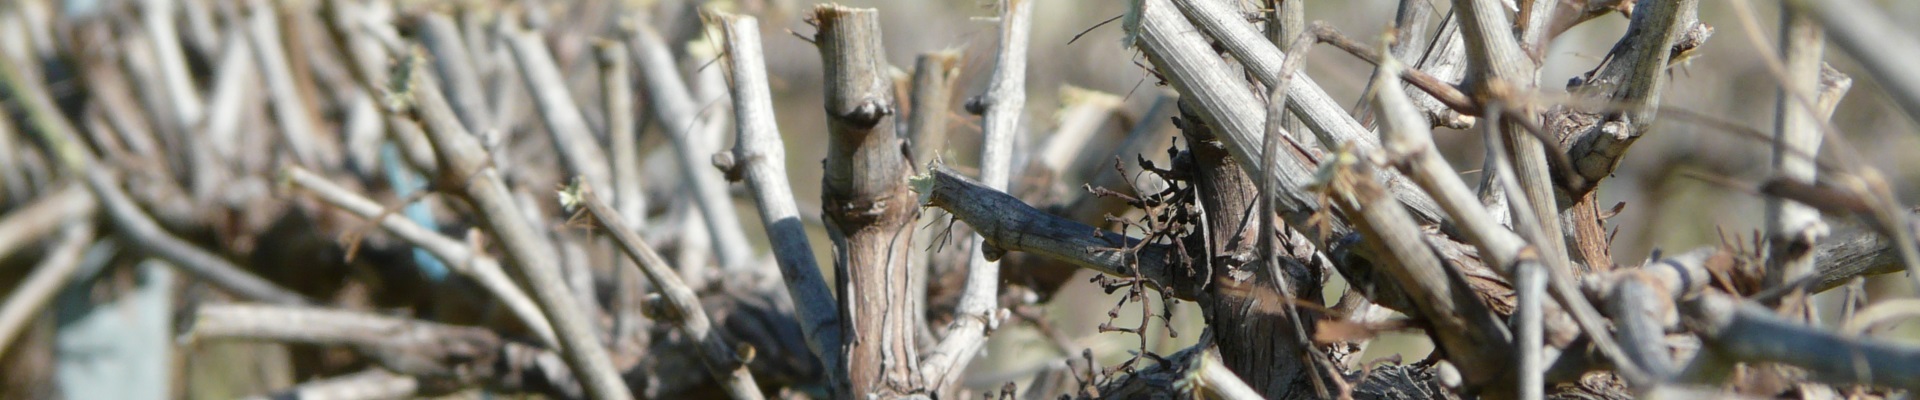 Vines after barrel pruning - Ackland Vineyard Services